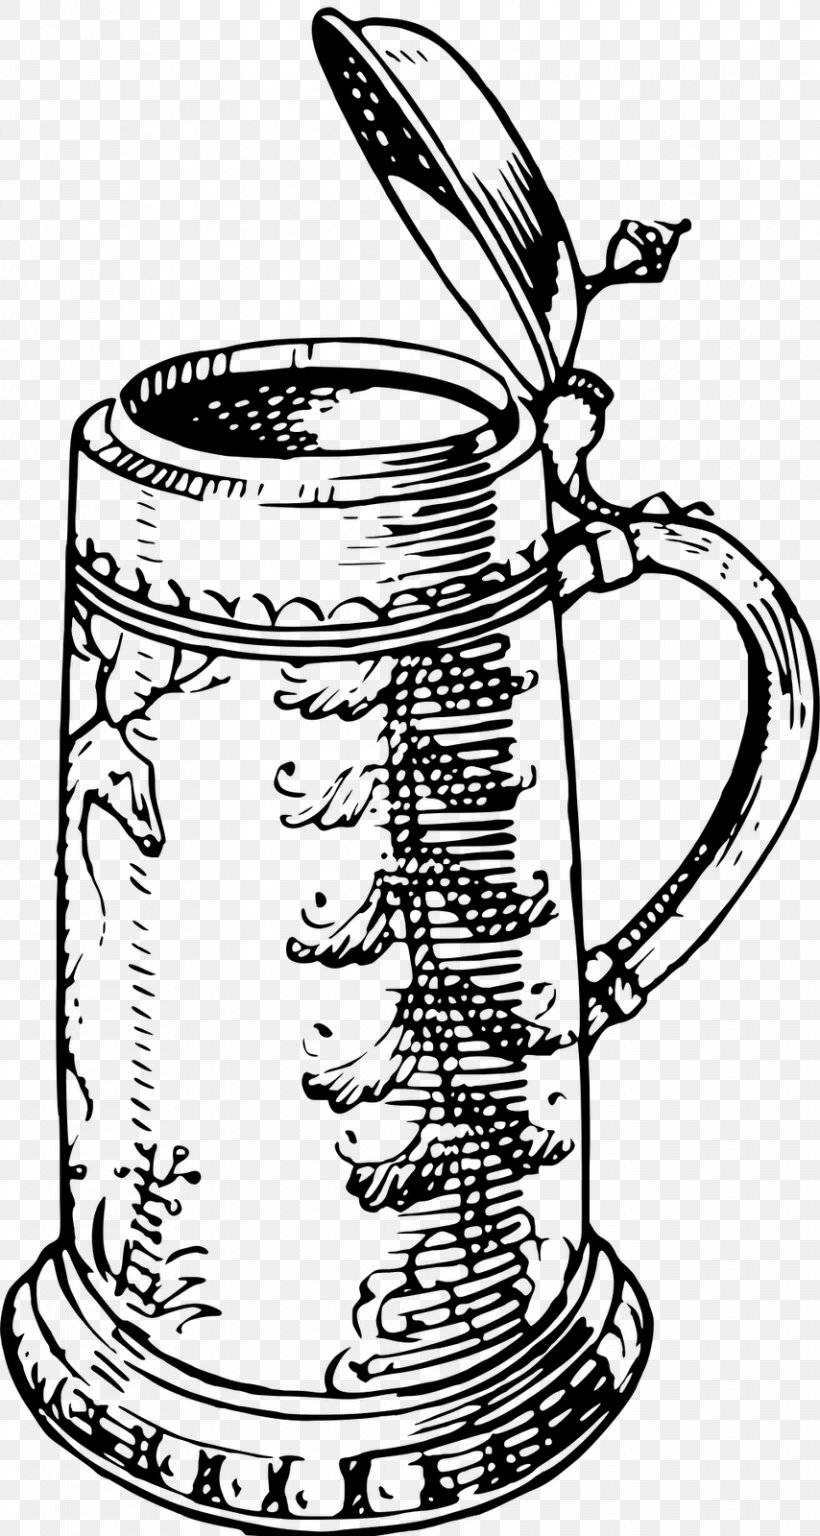 Beer Stein Tankard Beer Glasses Drawing, PNG, 854x1600px, Beer, Alcoholic Drink, Artwork, Beer Glasses, Beer Stein Download Free